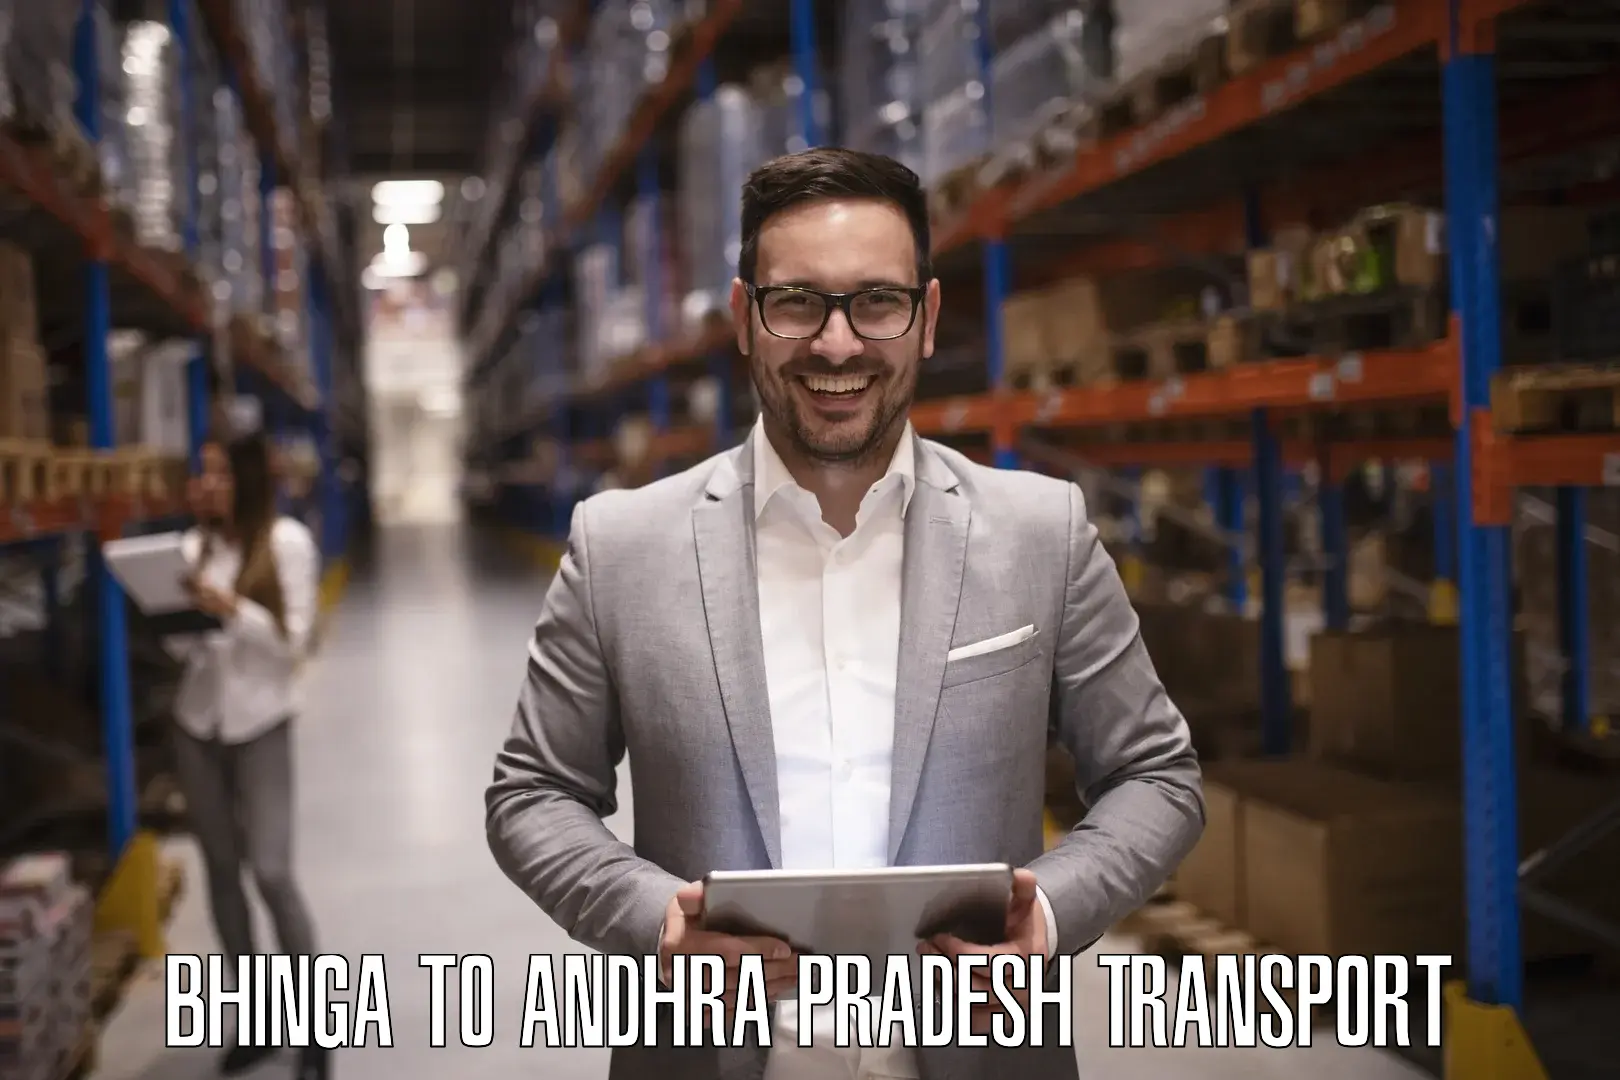 Daily parcel service transport Bhinga to Andhra Pradesh